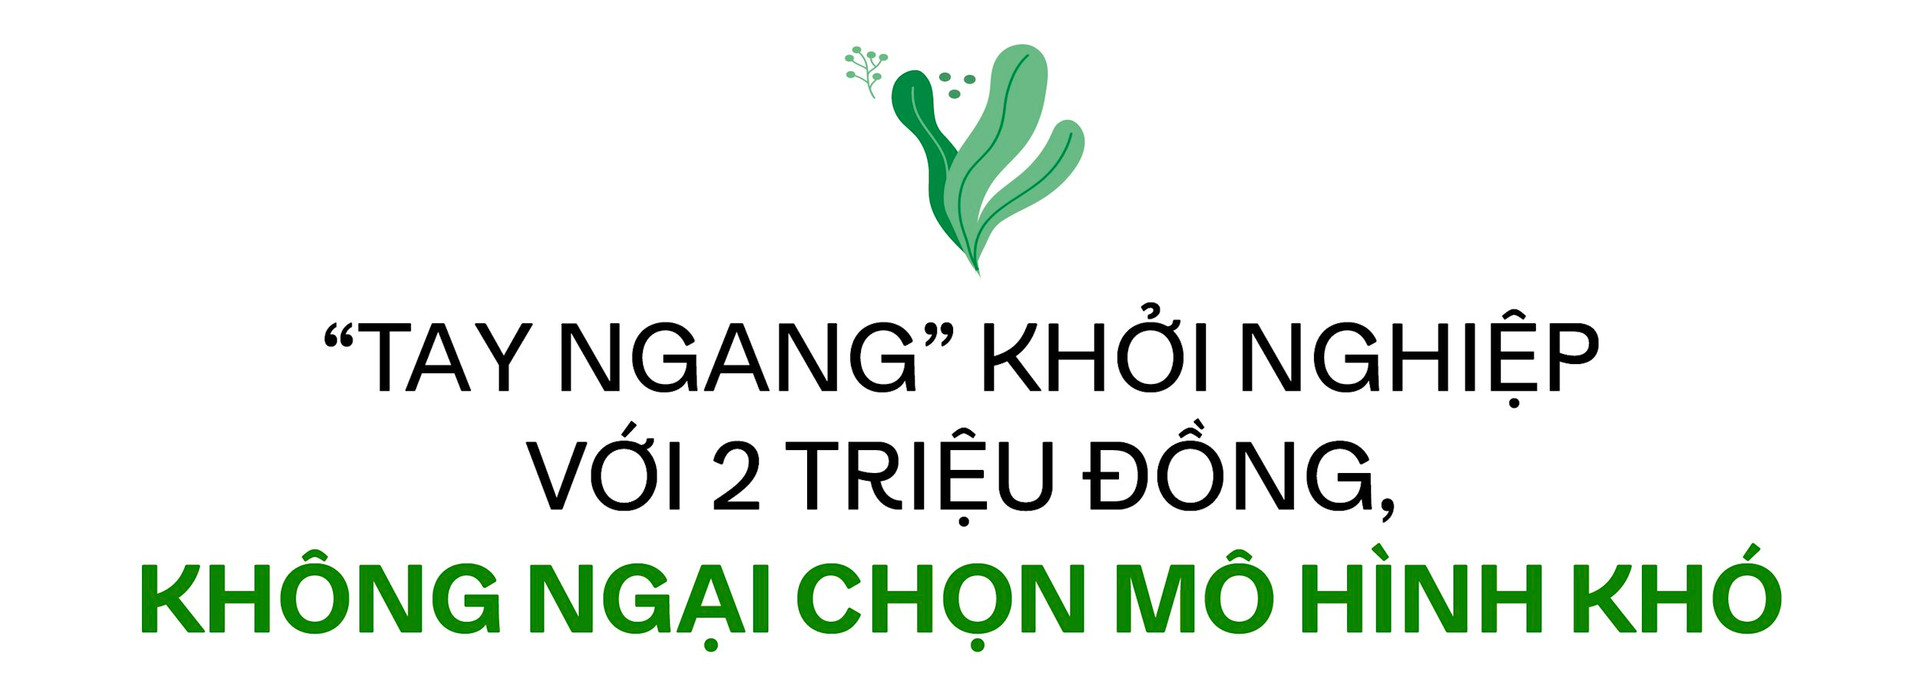 Từ kho nhỏ bán cây đến thương hiệu cà phê xanh có tiếng tại Hà Nội, CEO 8x kể chuyện chinh phục phân khúc cao cấp ở “ngách” mới, “tiền không phải vấn đề” với khách hàng - Ảnh 1.